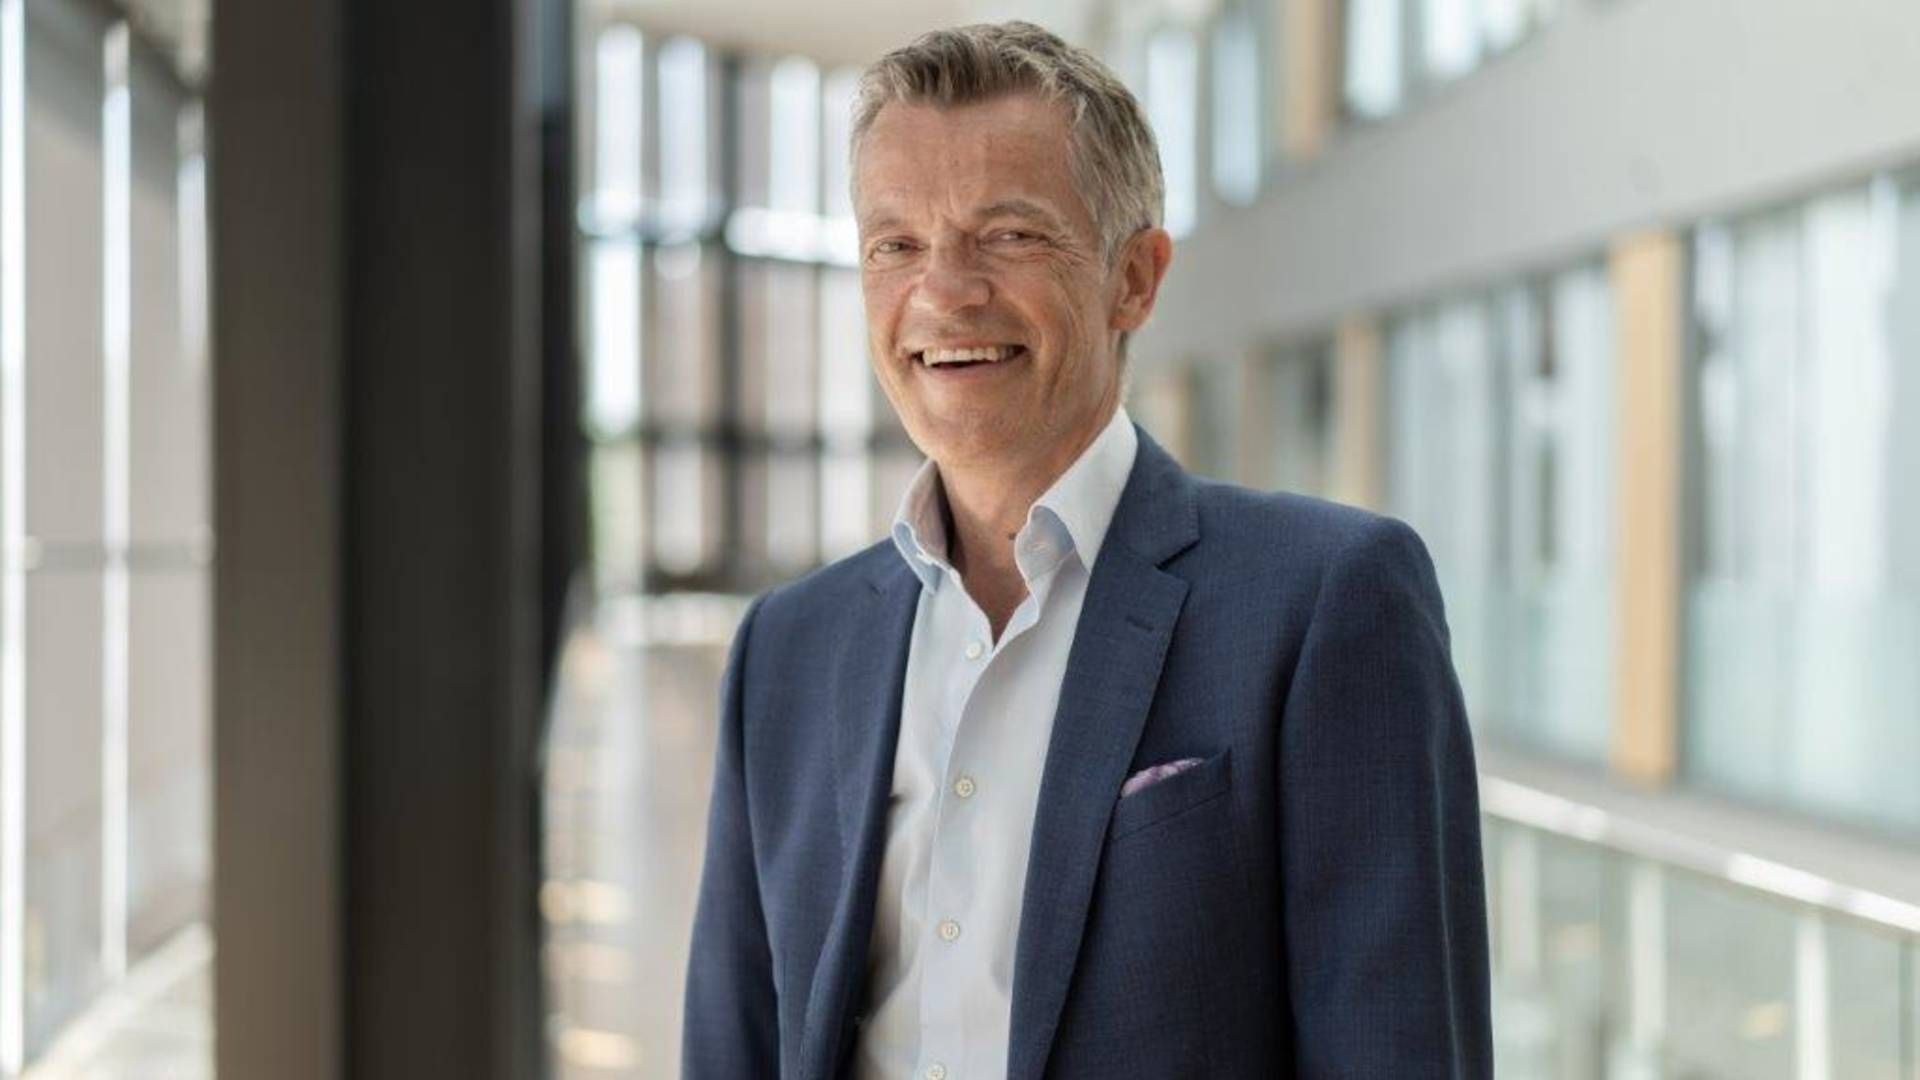 Jørgen Hjemdal, Head of Institutional Clients & Distribution at Storebrand Asset Management | Photo: PR / Storebrand Asset Management